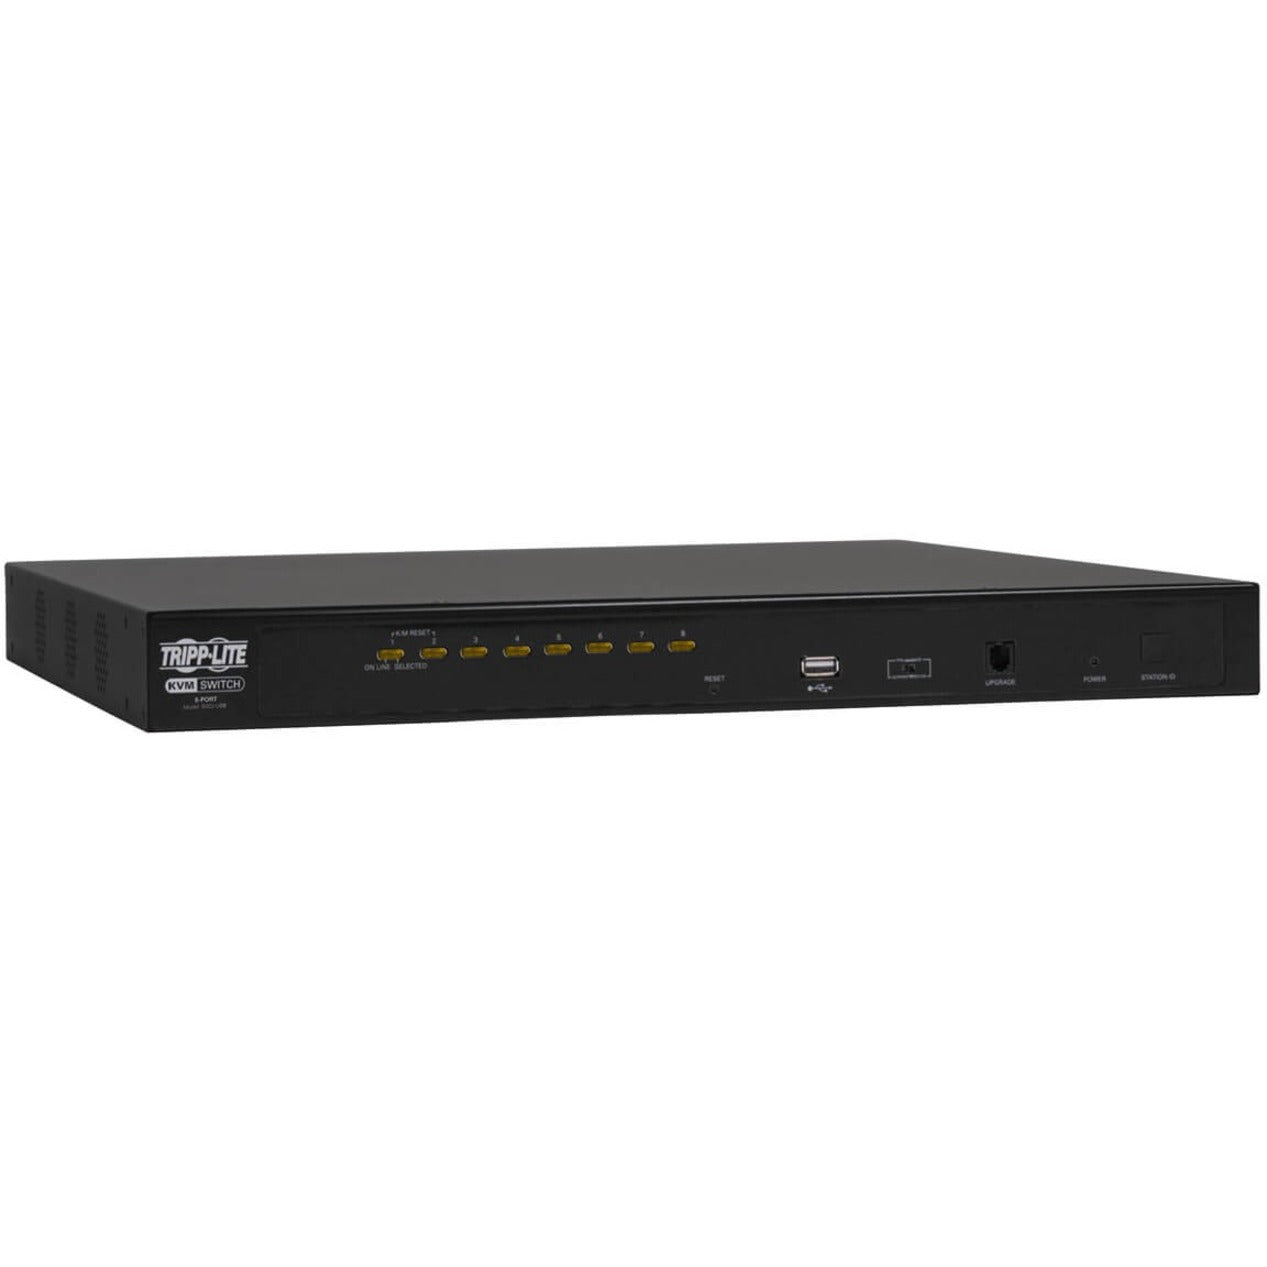 Tripp Lite B022-U08 NetDirector 8-Port 1U Rack-Mount KVM Switch, USB, 2048 x 1536 Resolution, 3 Year Warranty